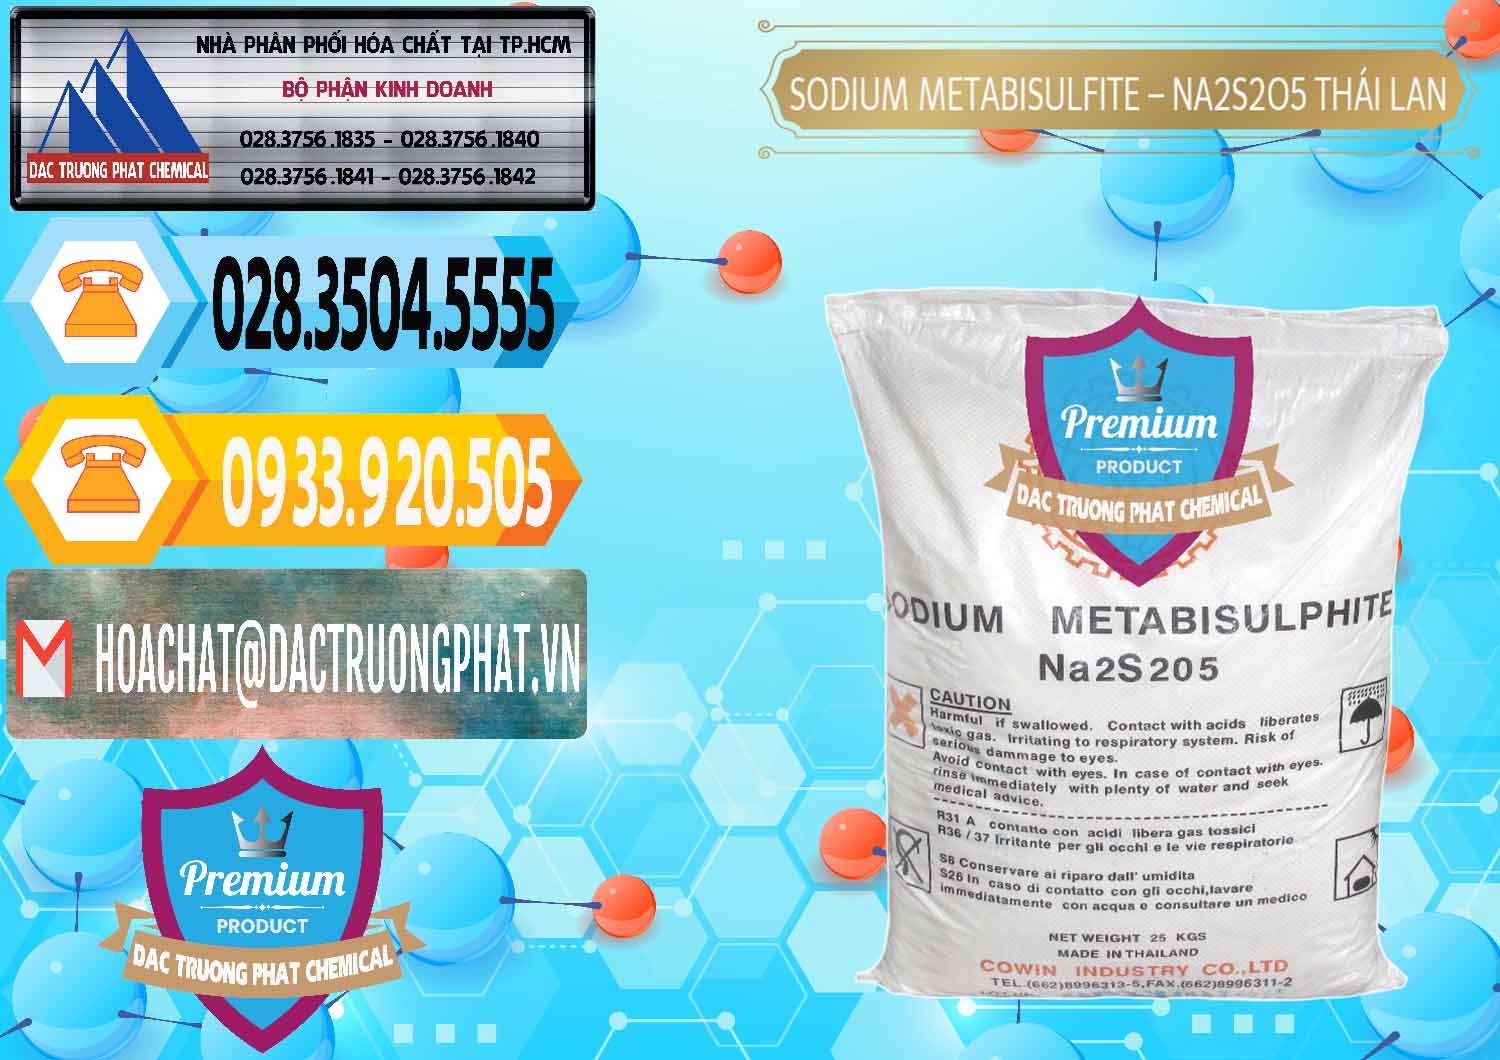 Cty chuyên bán ( phân phối ) Sodium Metabisulfite - NA2S2O5 Thái Lan Cowin - 0145 - Công ty chuyên cung ứng & phân phối hóa chất tại TP.HCM - hoachattayrua.net